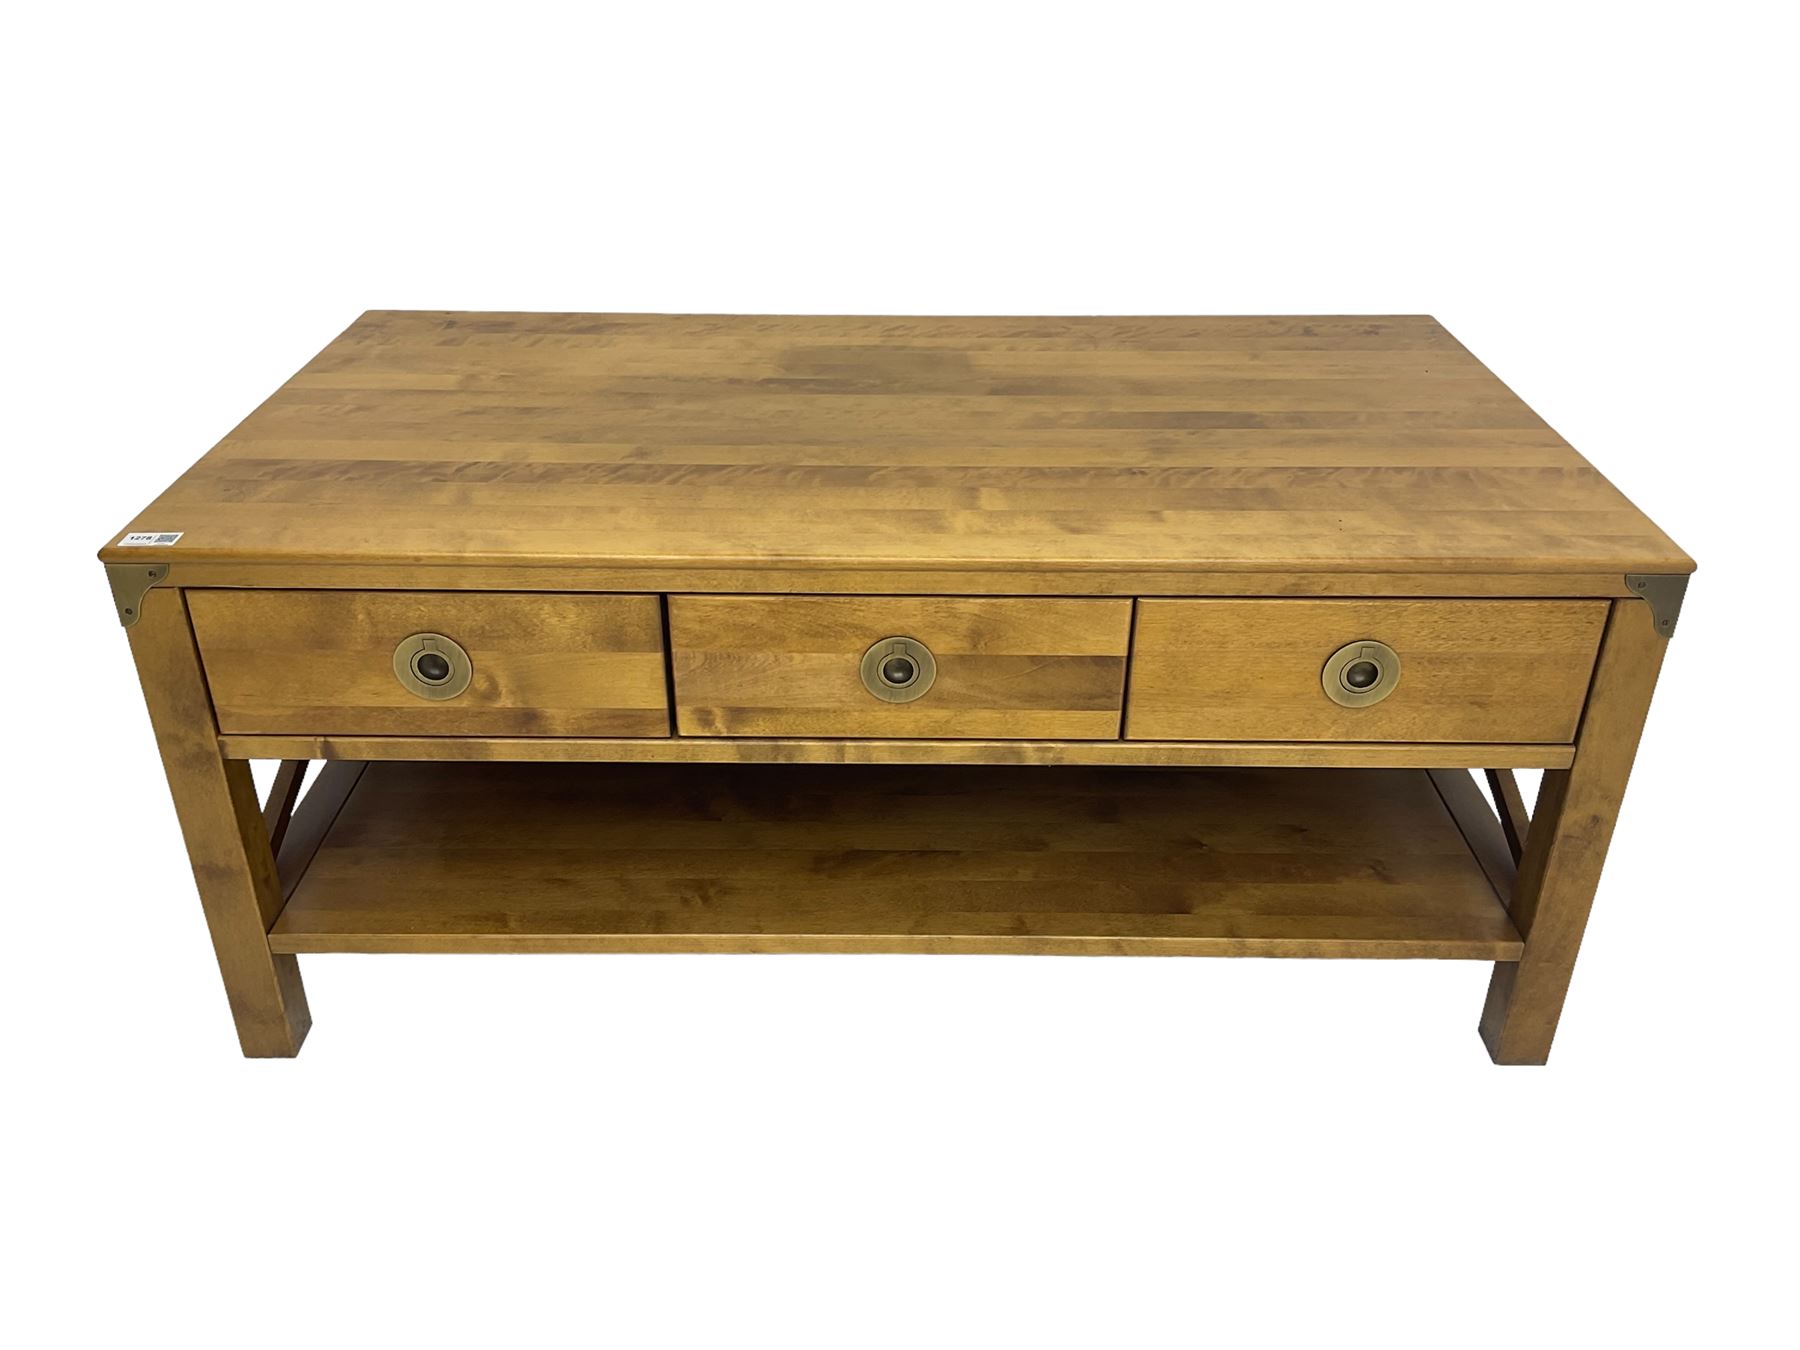 Rectangular hardwood coffee table - Image 2 of 6